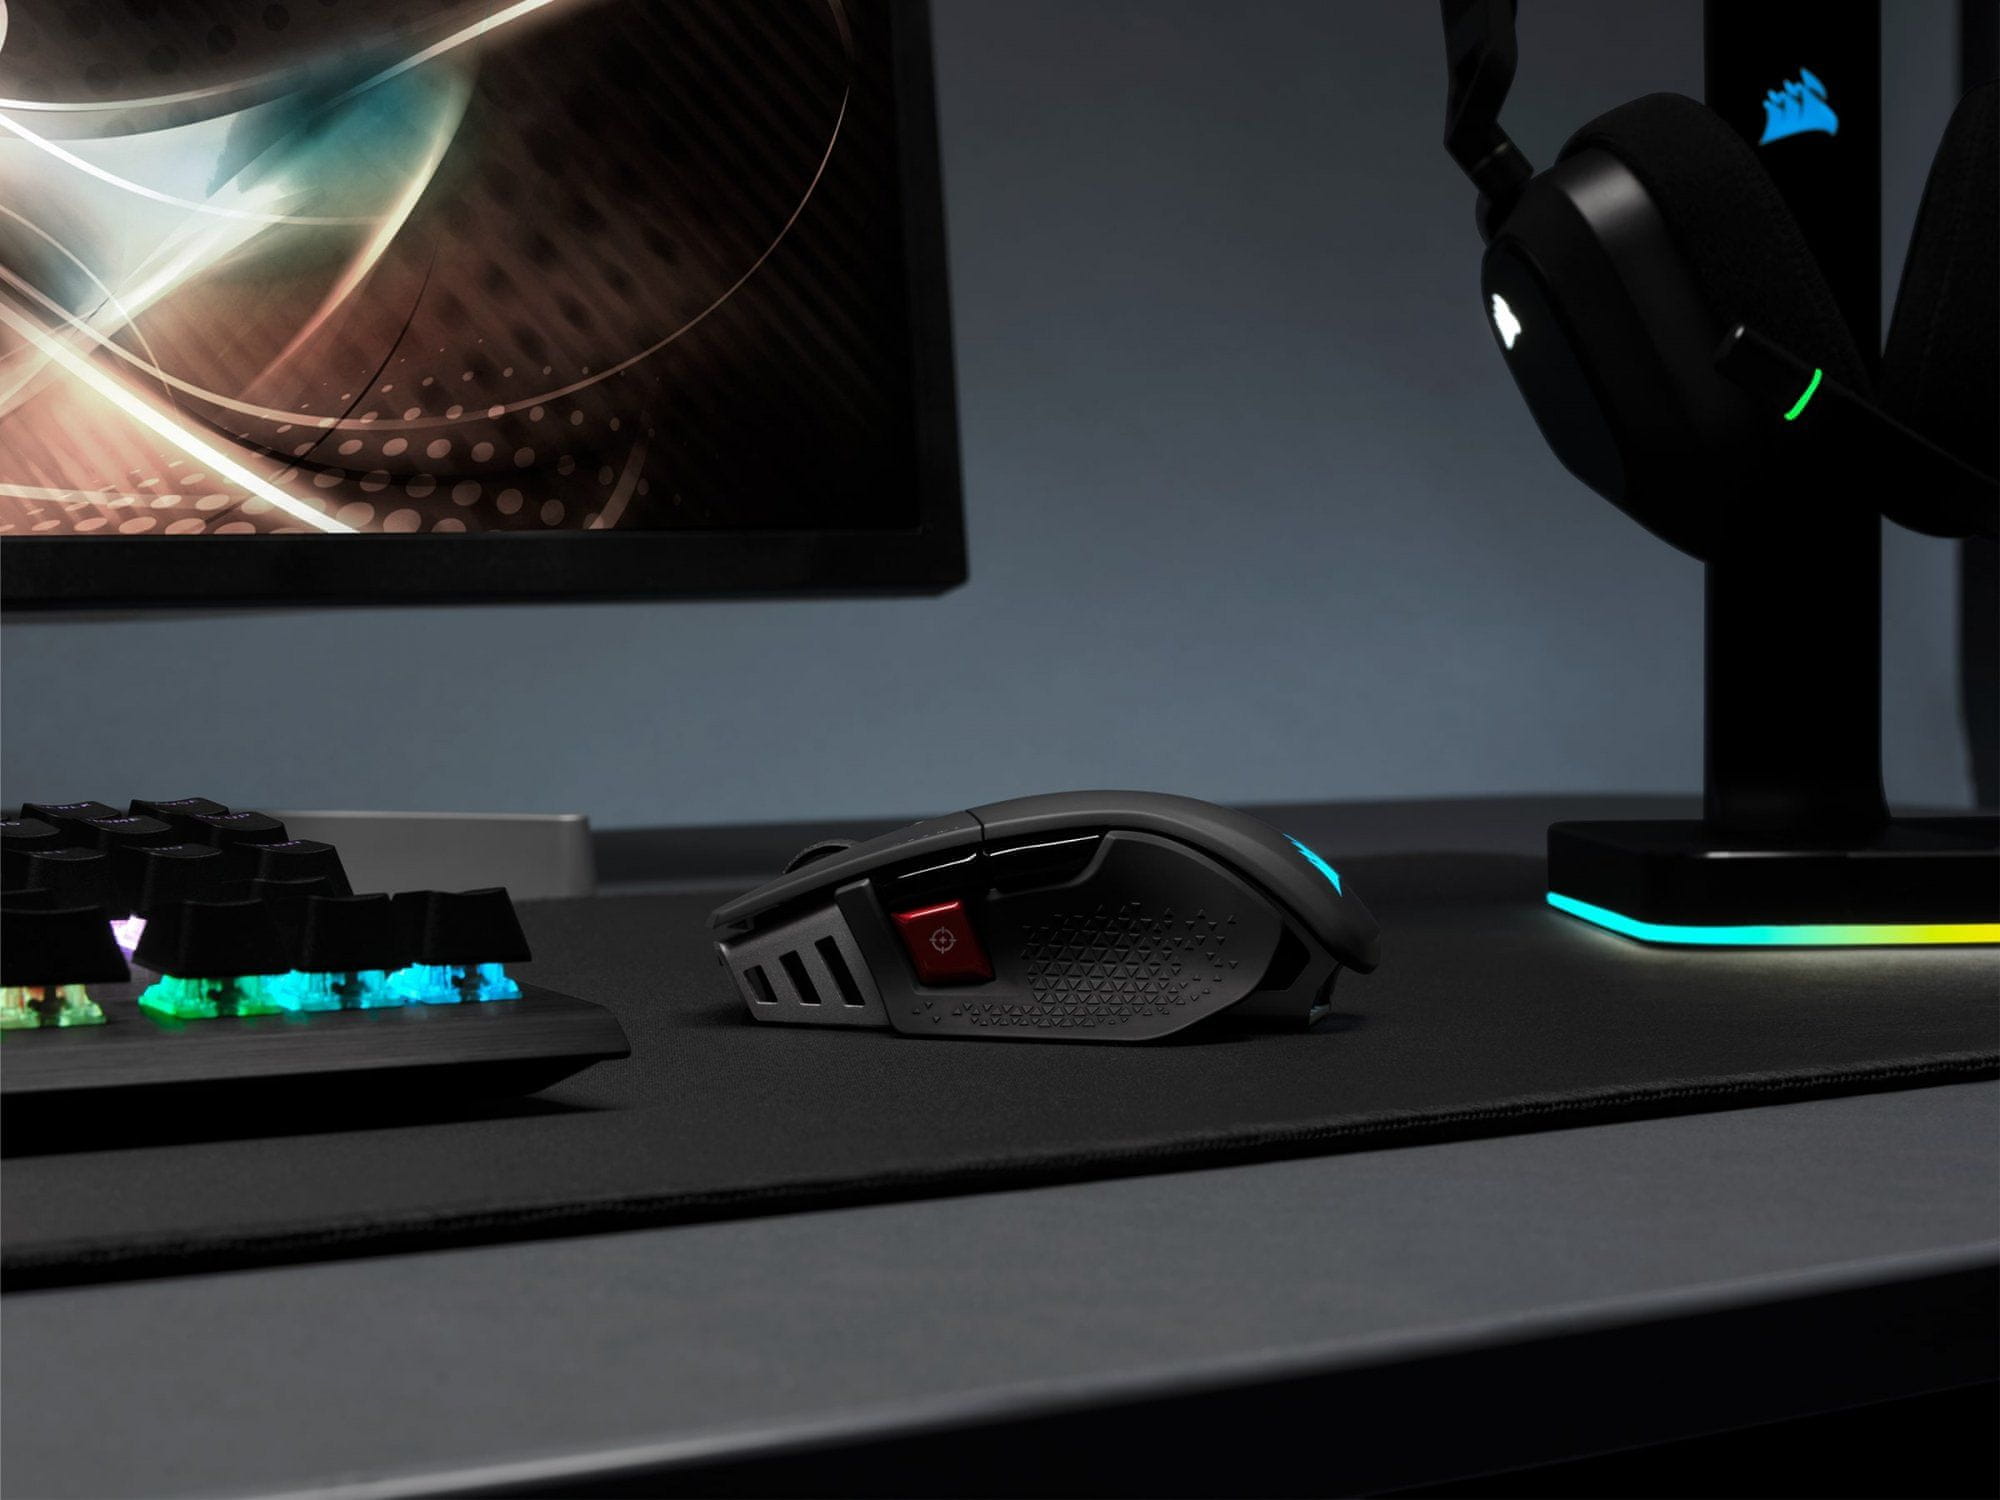 Herní myš Corsair M65 RGB Pro, černá (CH-9300011-EU), RGB, 12 000 dpi, 8 tlačítek, hliník, ergonomie, pravoruká, USB, doba odezvy